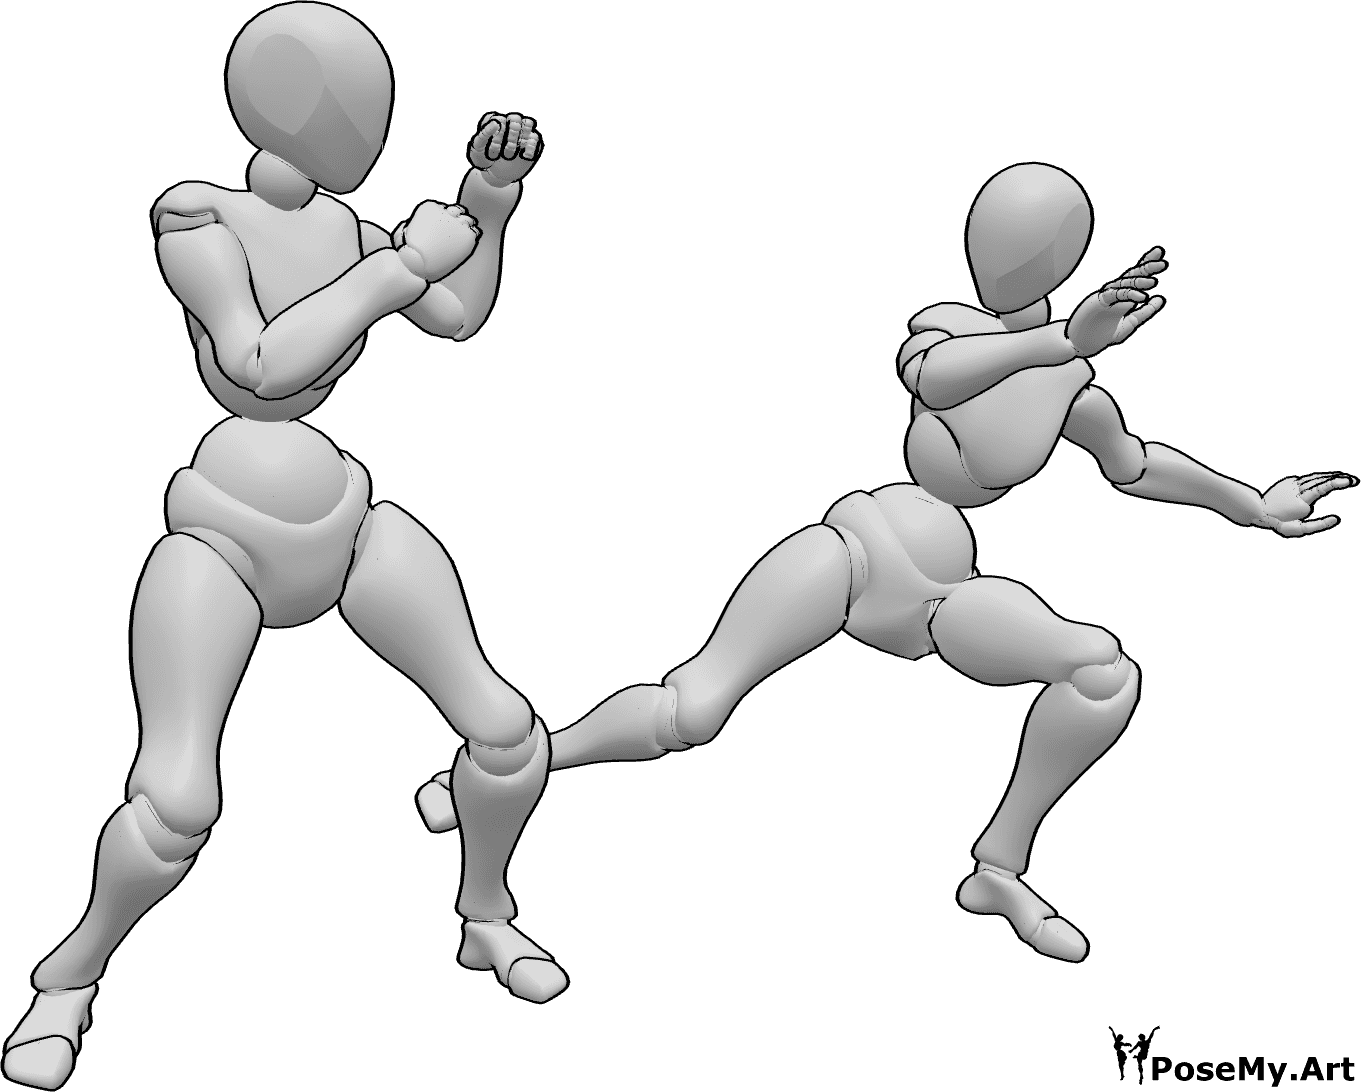 Riferimento alle pose- Femmine che combattono a calci - Due femmine stanno lottando, una di loro dà un calcio all'altra femmina.